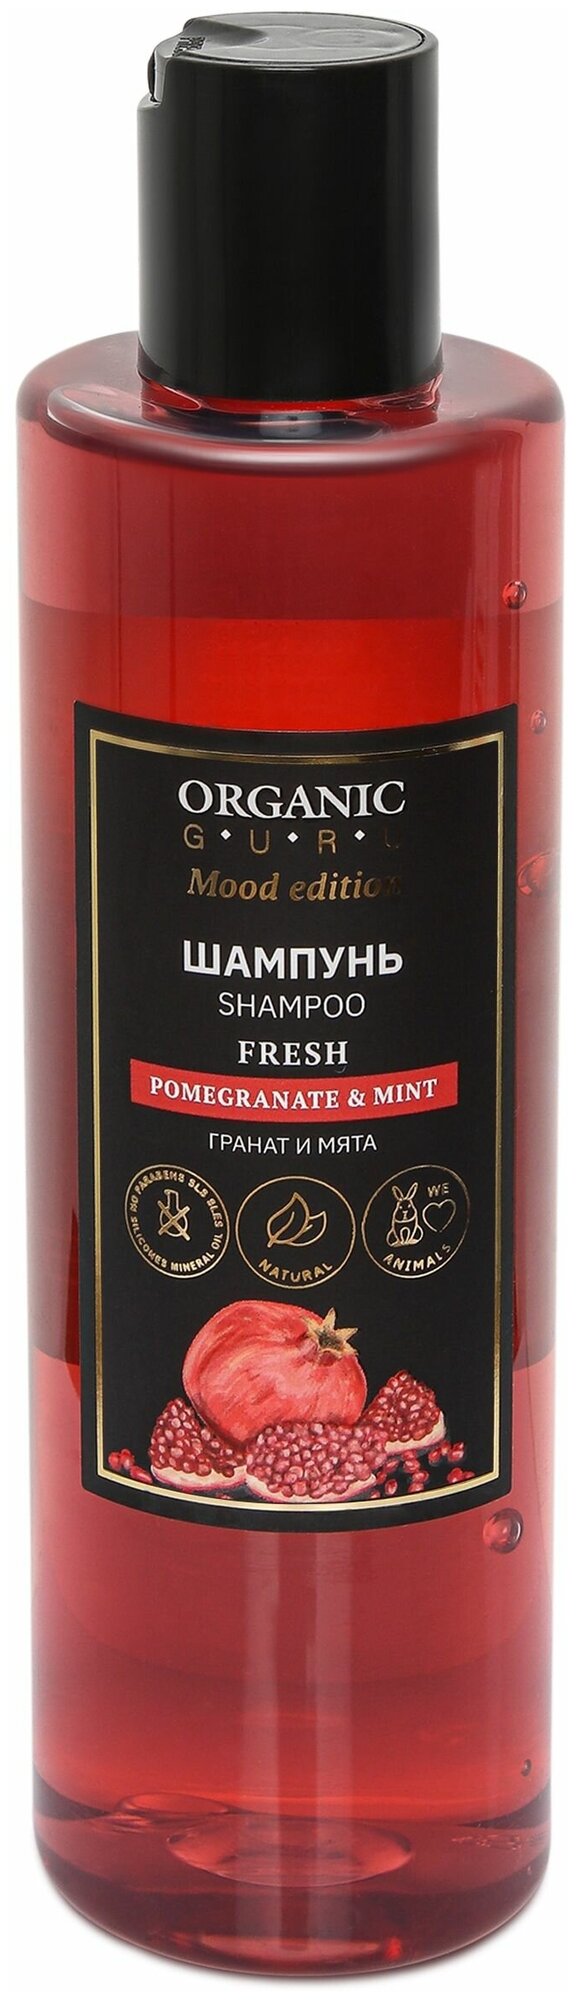 Organic Guru Шампунь для волос "Гранат и Мята" для всех типов волос Органик Гуру Без SLS и парабенов, бессульфатный, органический, 250 мл.